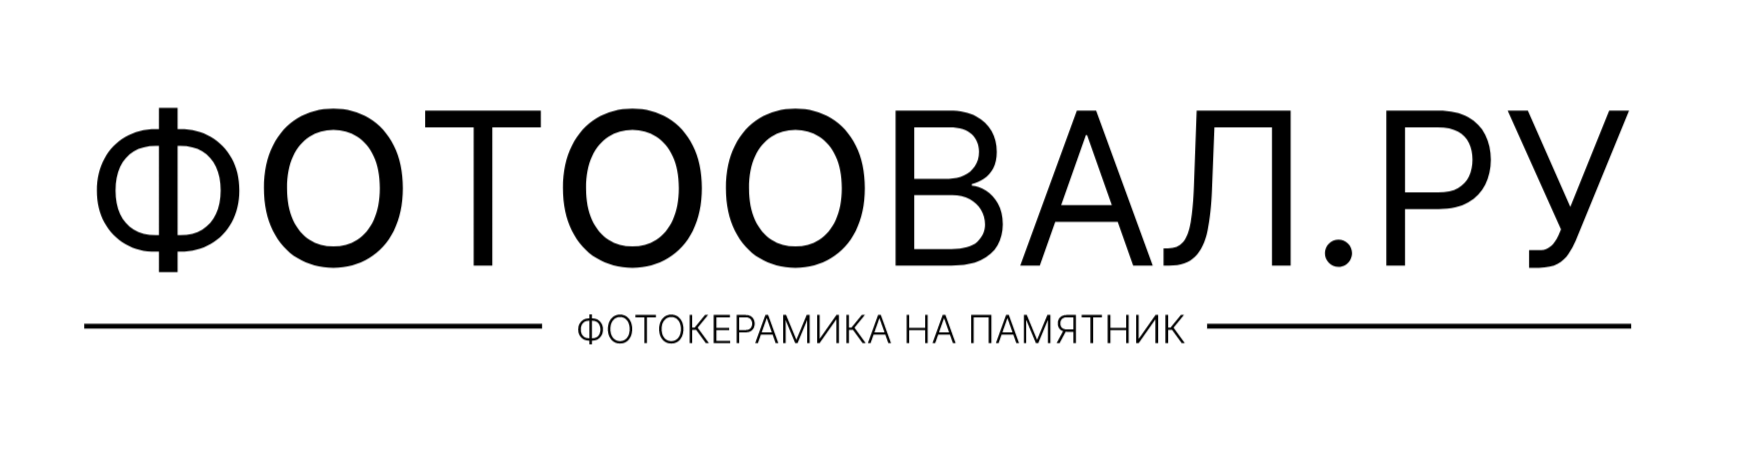 Фотоовал.ру | Фото на памятник Логотип(logo)